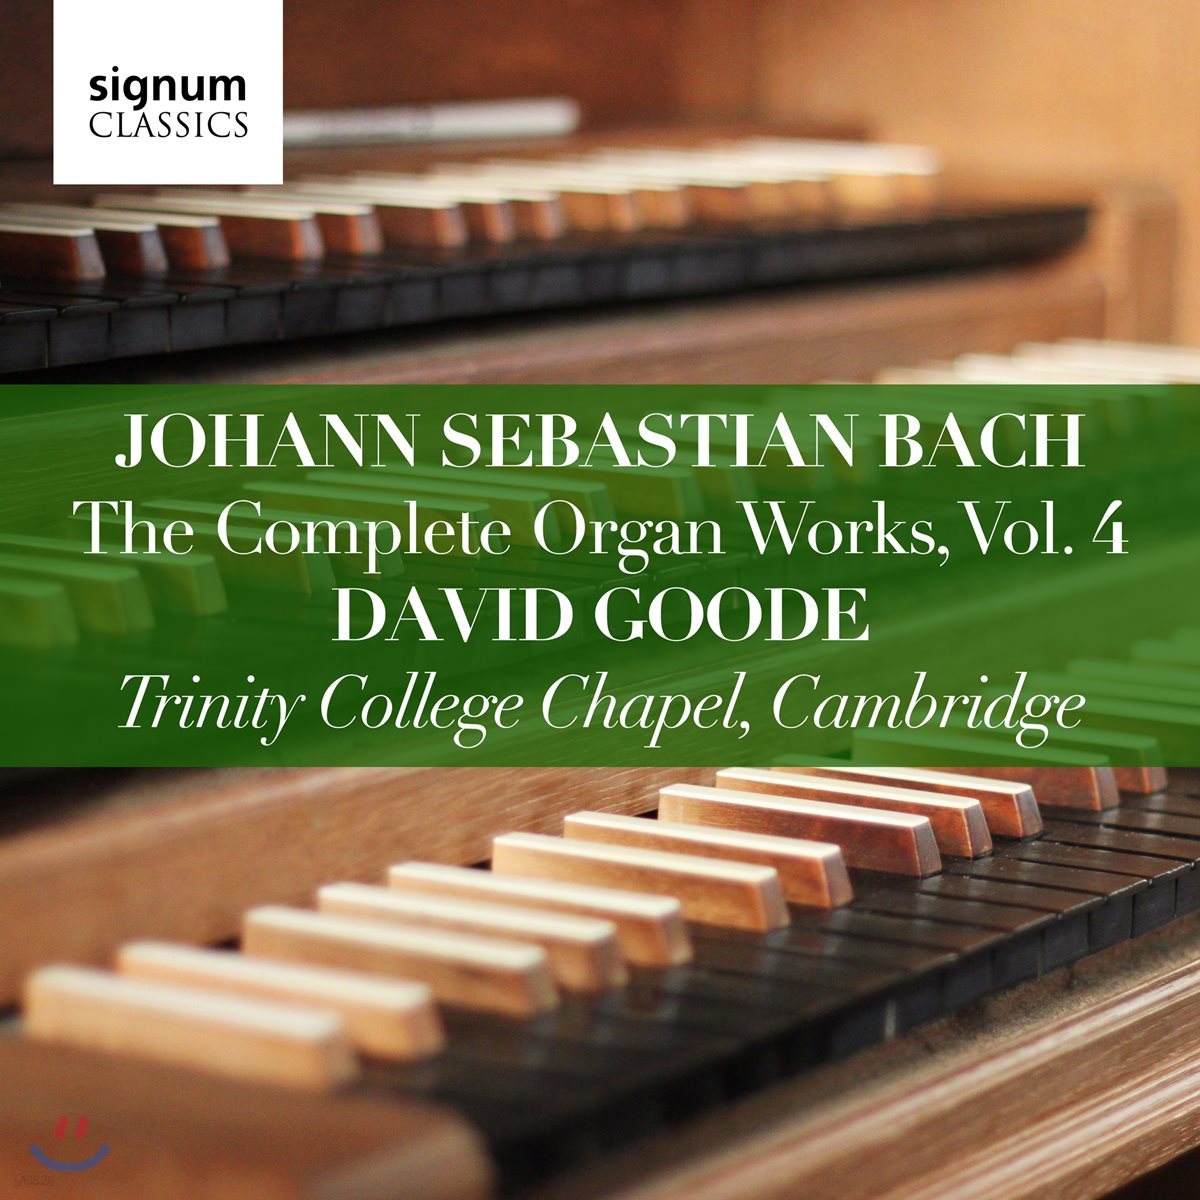 David Goode 바흐: 오르간 작품 전곡 4집 - 데이비드 구드 (J.S. Bach: The Complete Organ Works Vol. 4)